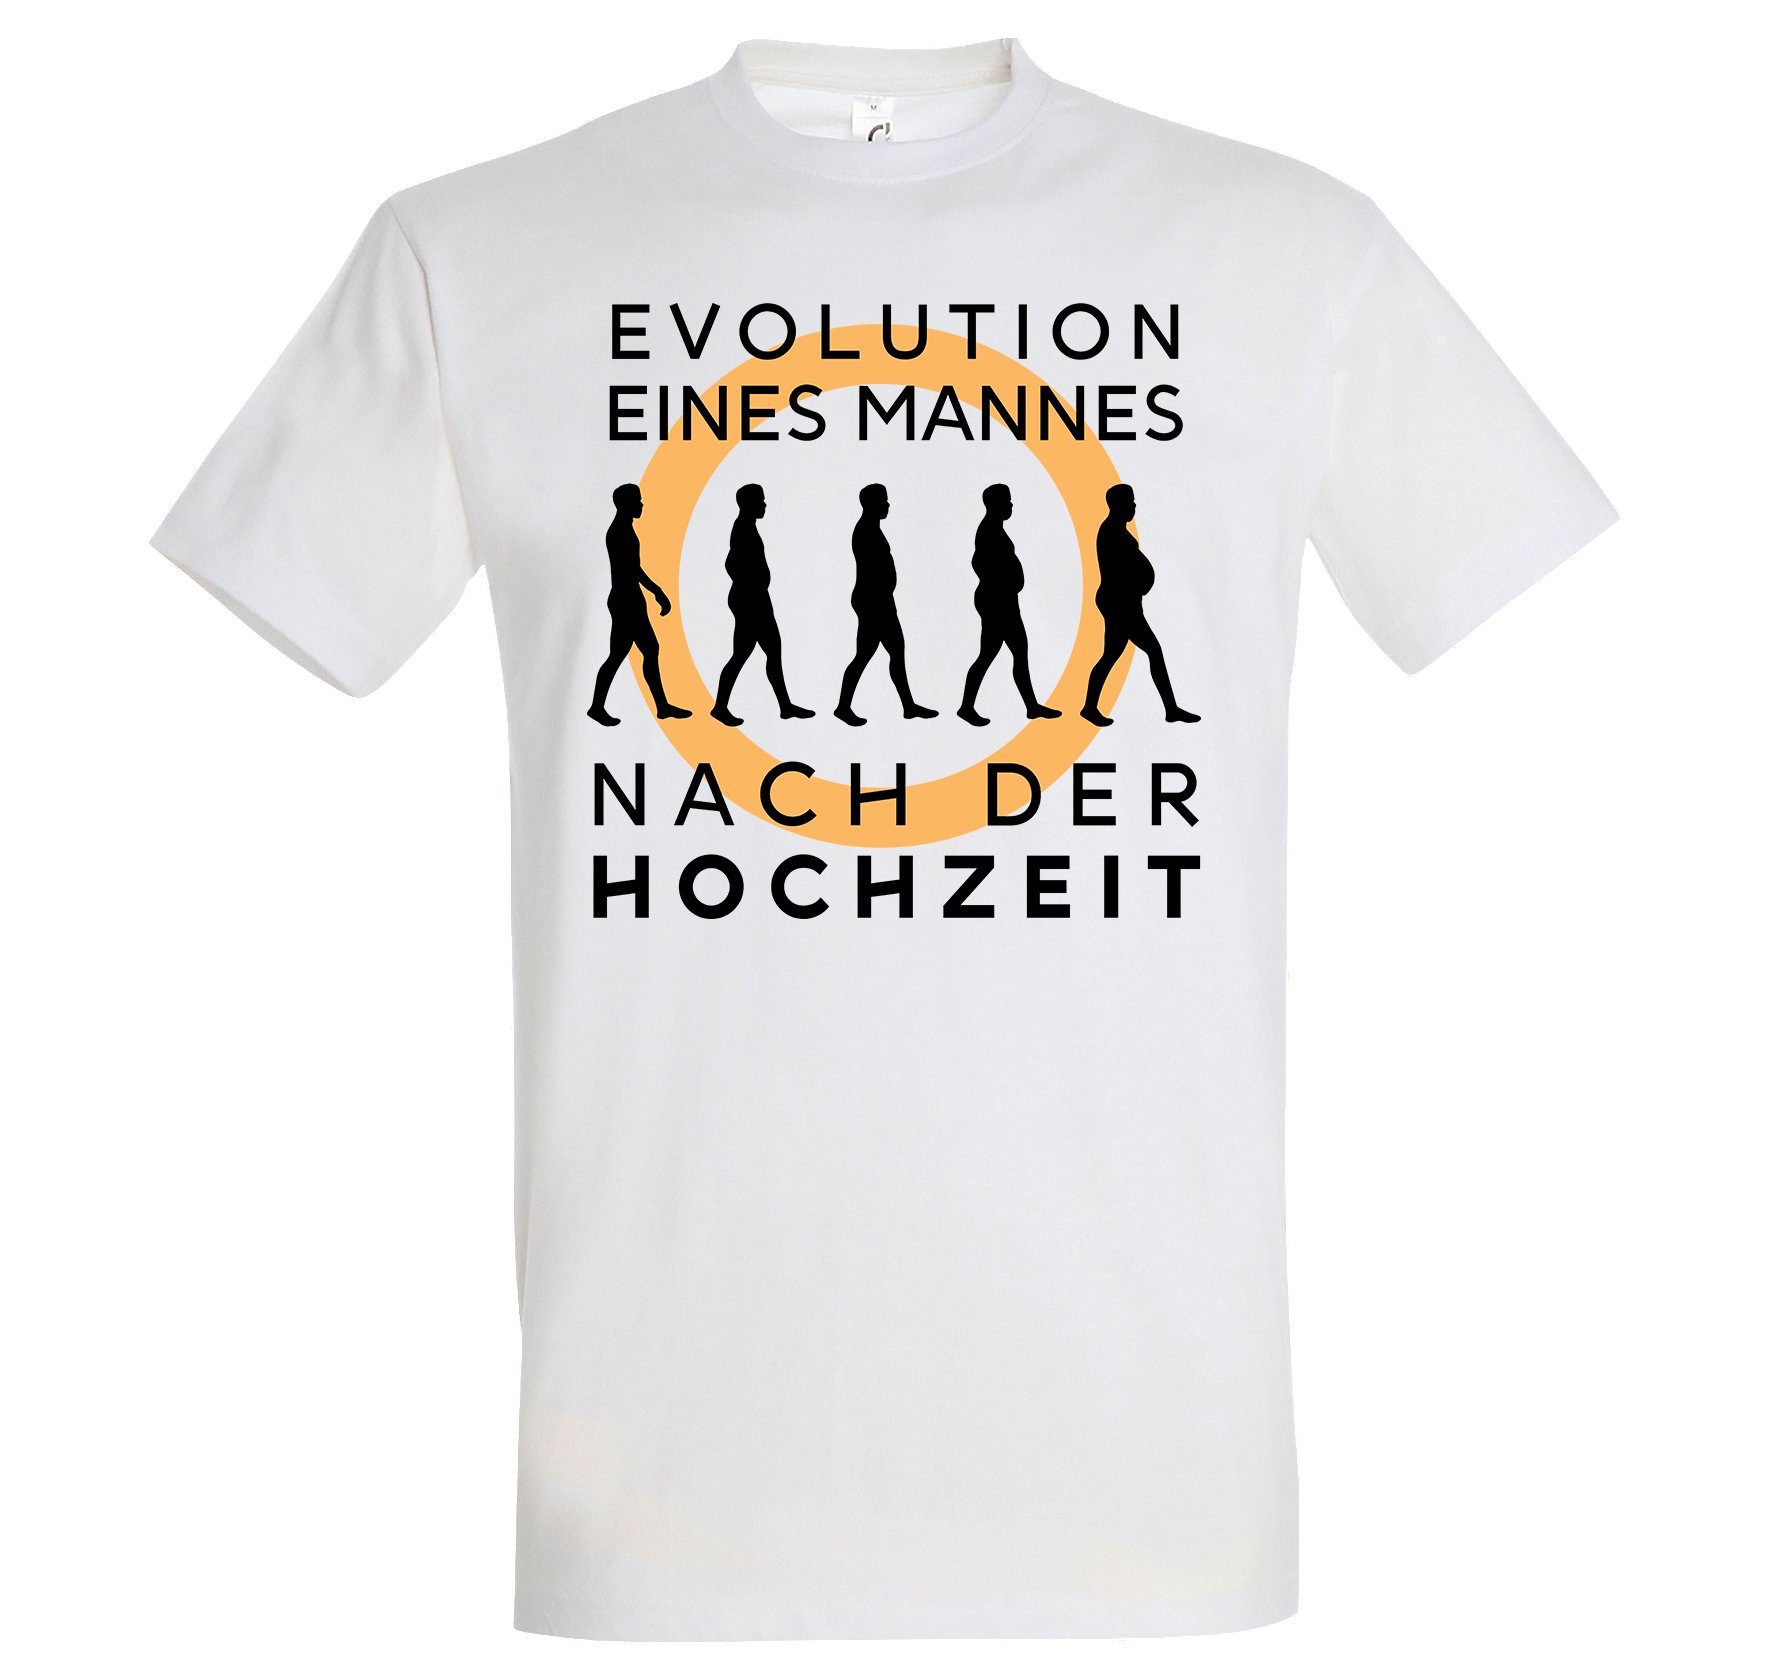 Hochzeit Designz Frontprint T-Shirt Evolution mit nach der trendigem Shirt Weiß Youth Herren